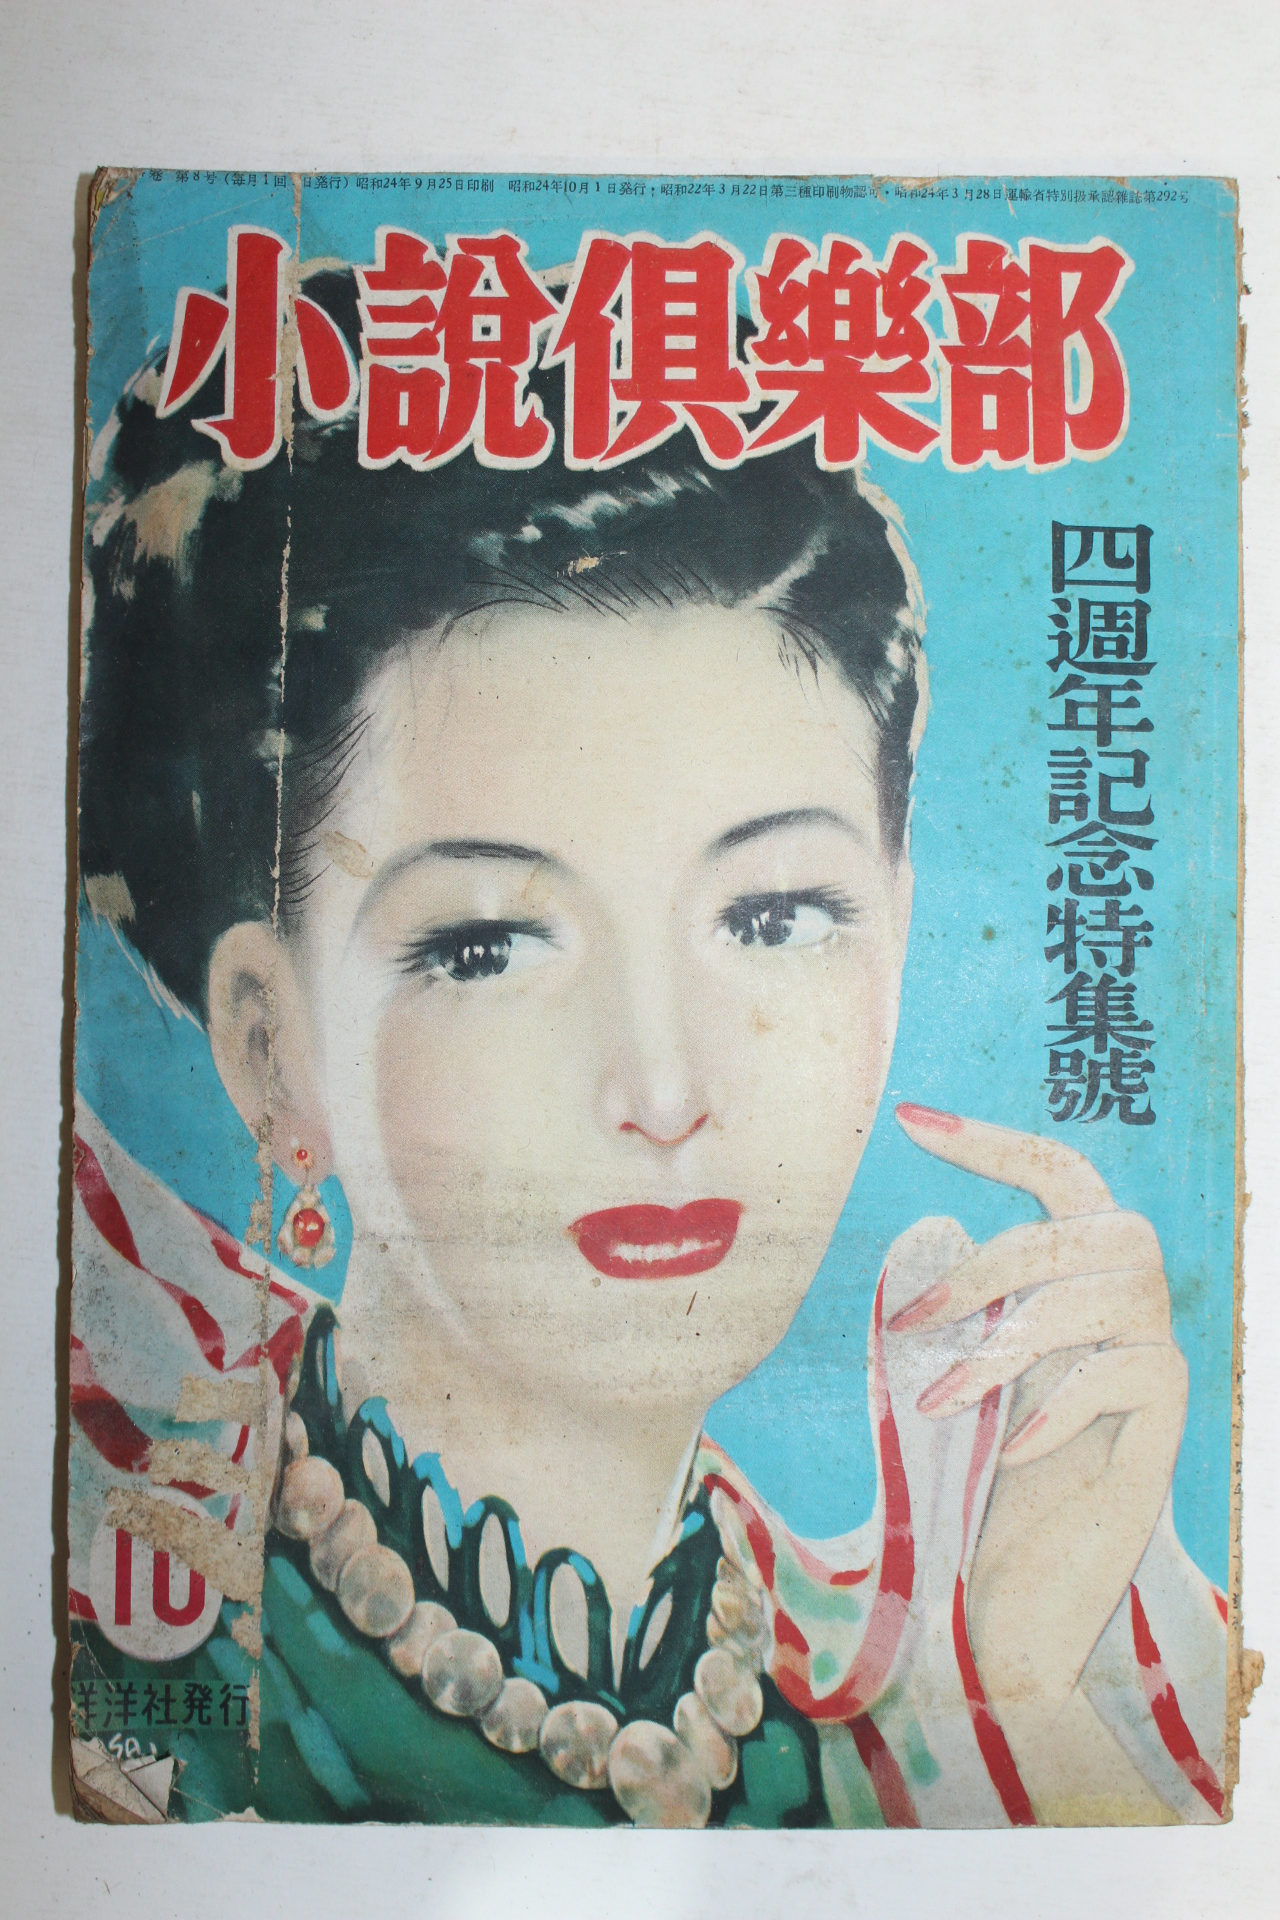 1949년(소화24년) 일본간행 소설구락부 10월호